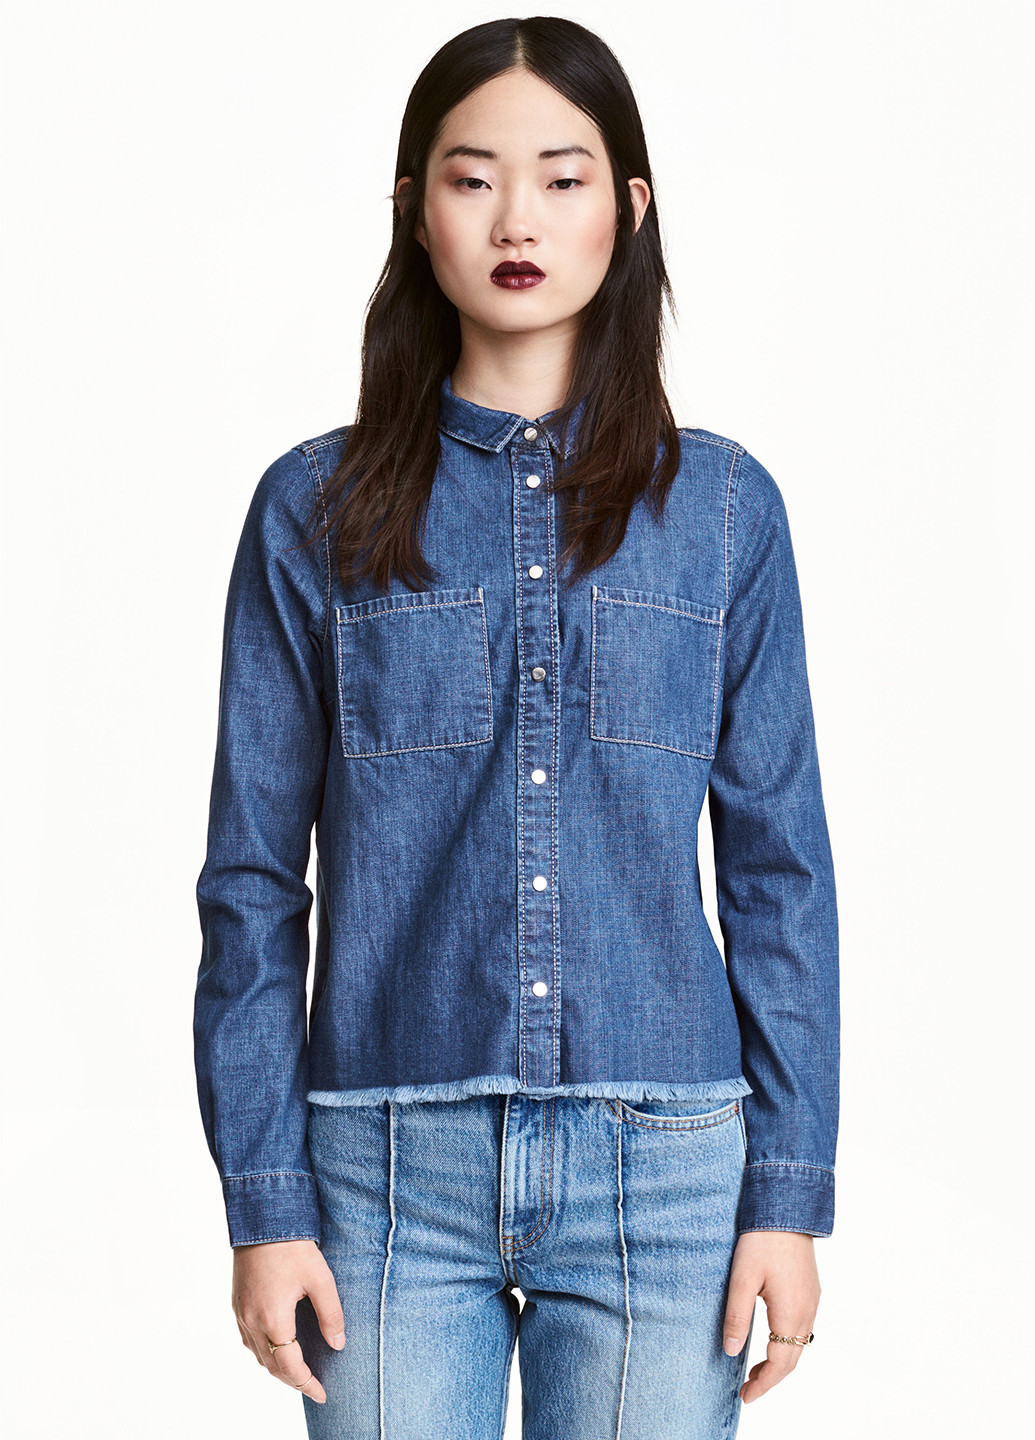 Синяя джинсовая рубашка однотонная H&M